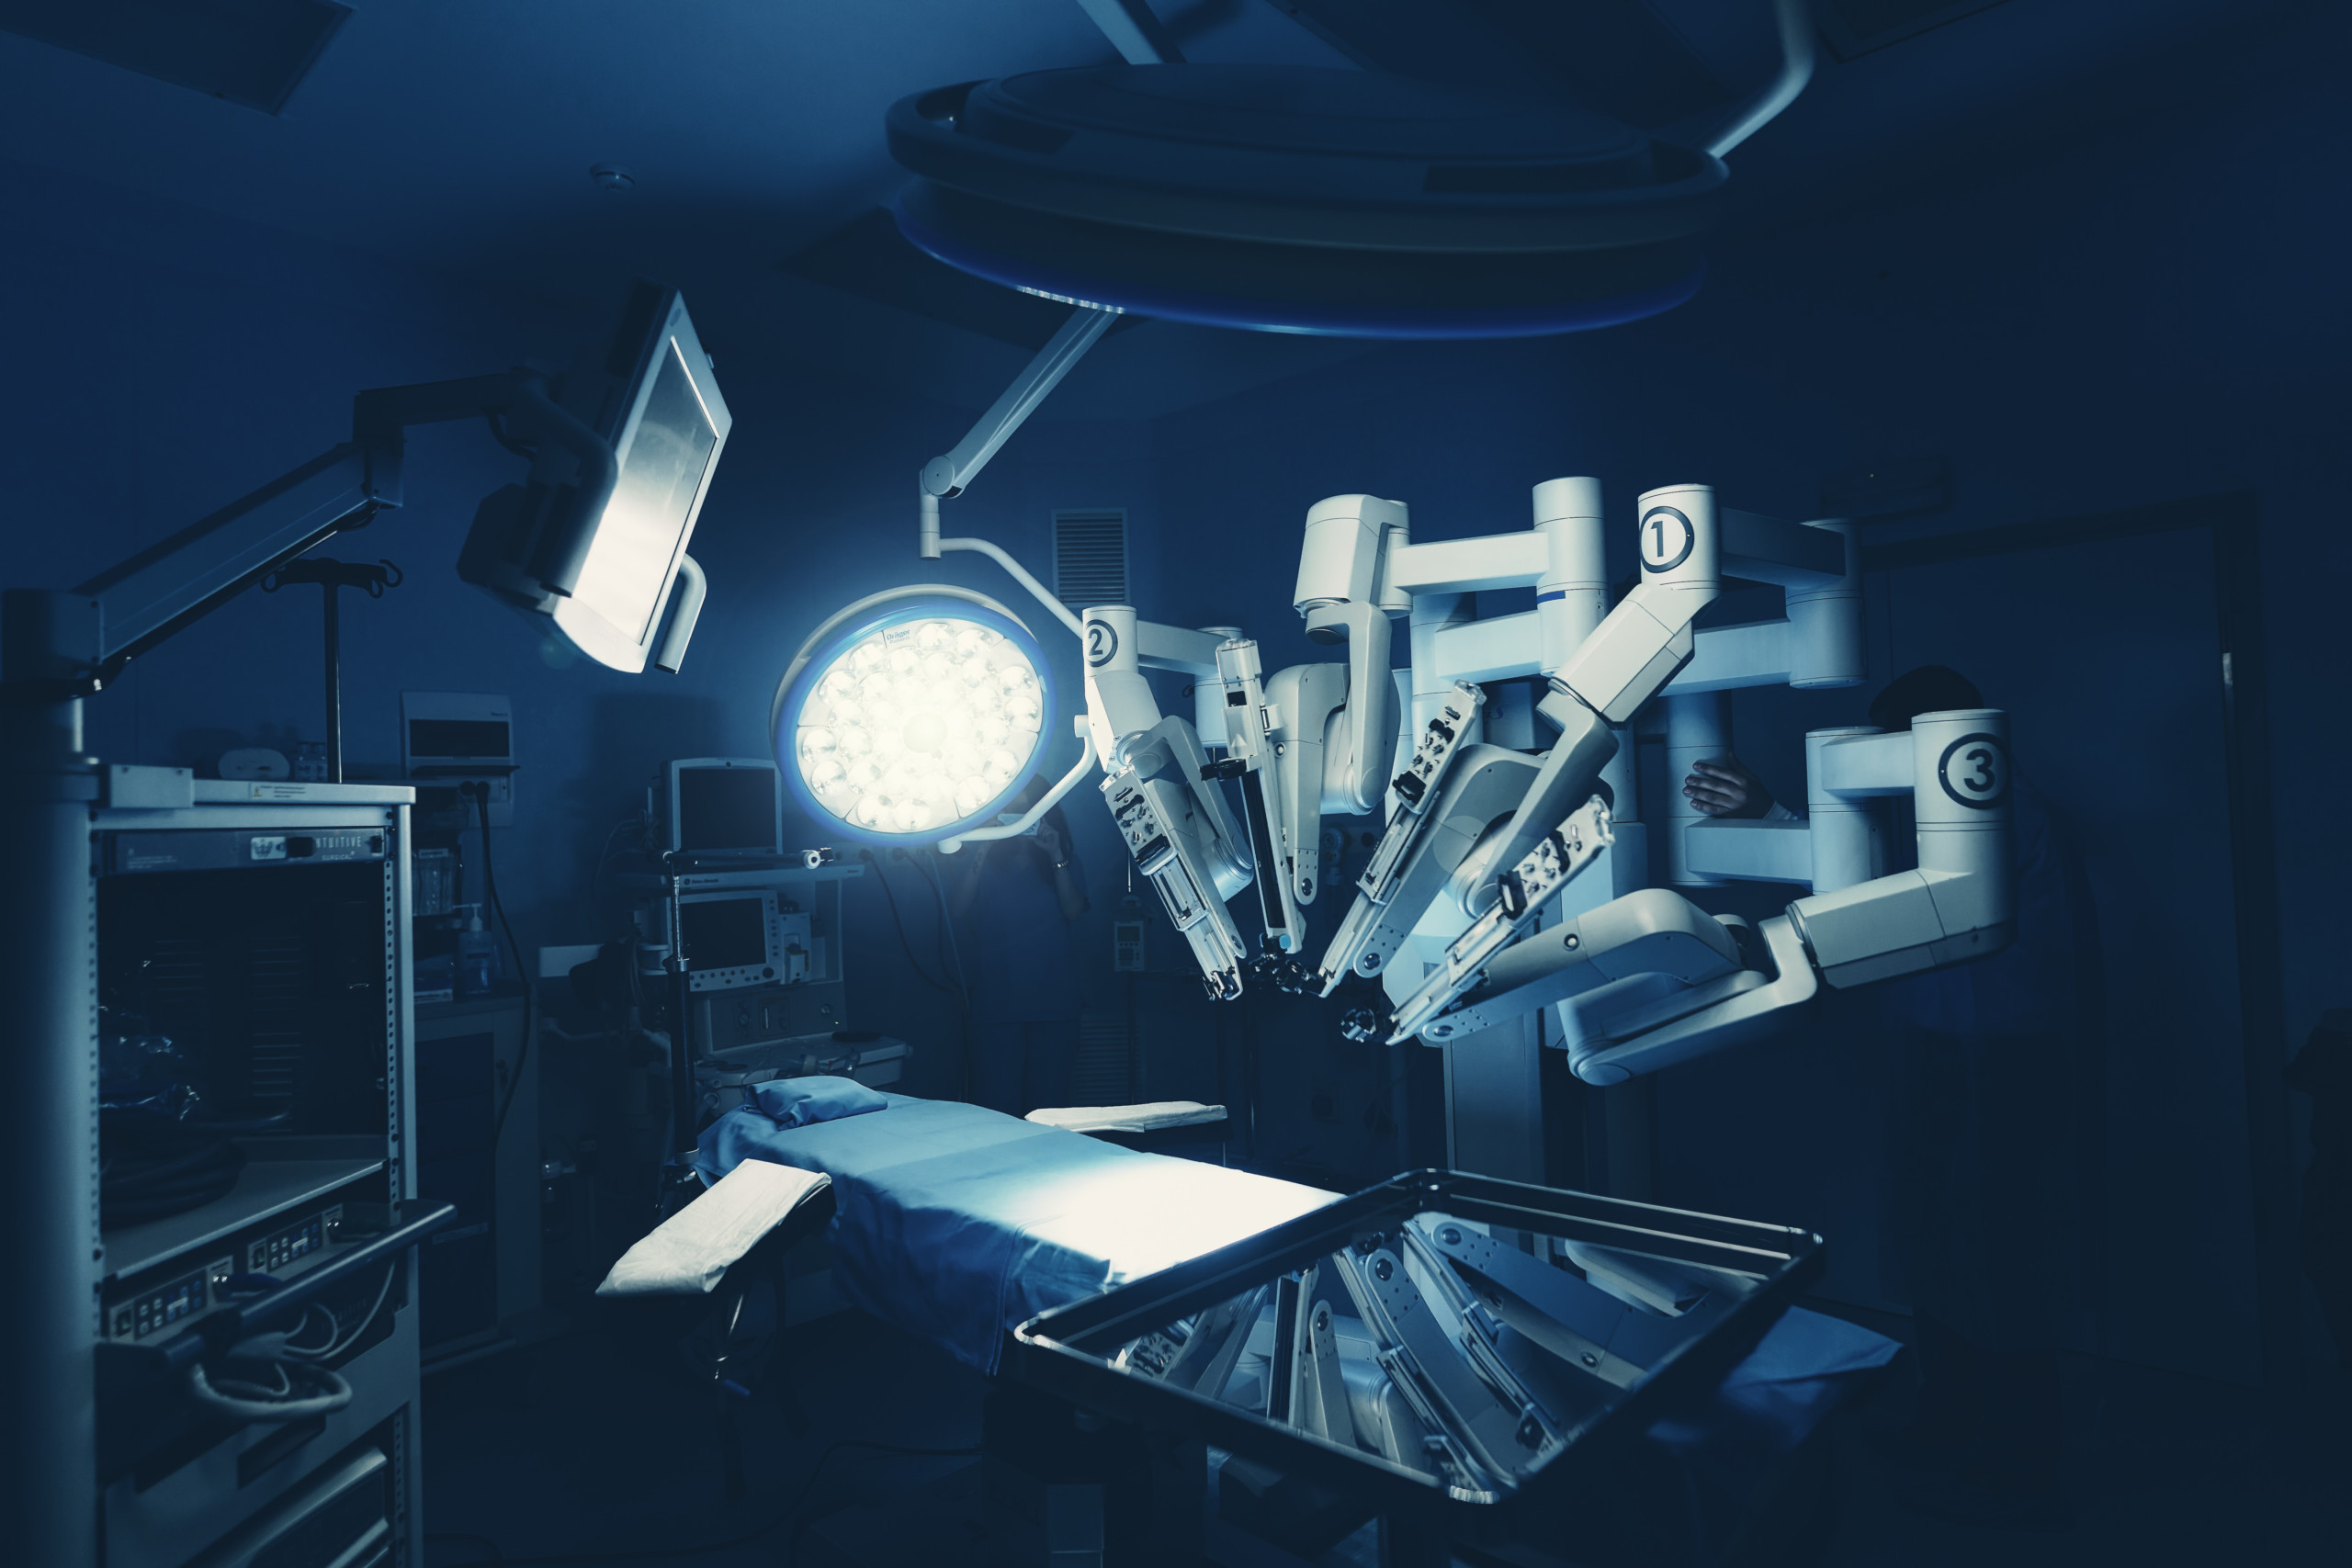 Intuitive Surgical erlebt Kursanstieg nach FDA-Zulassung für revolutionäres Chirurgiesystem